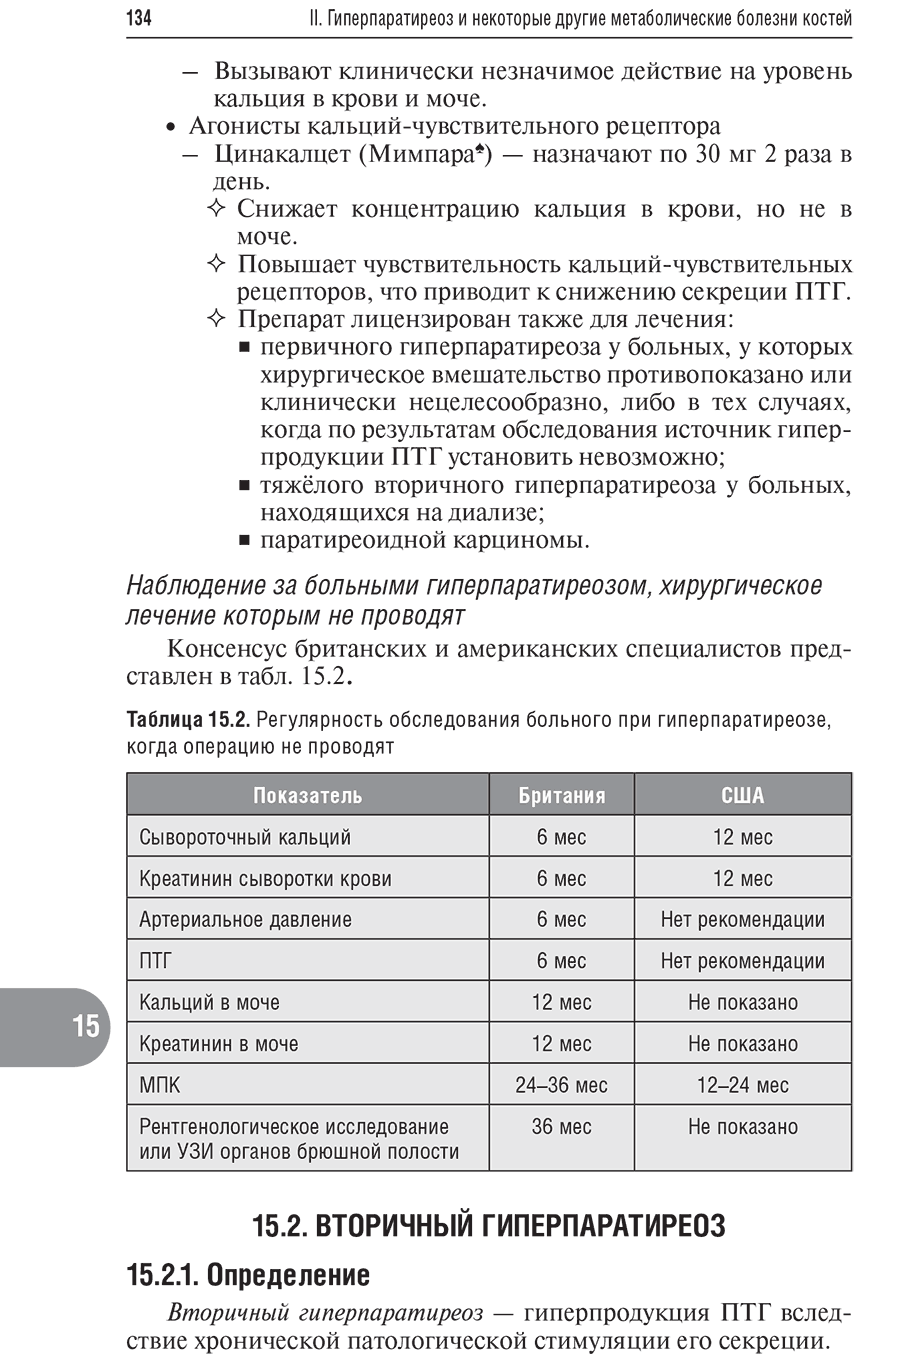 Таблица 15.2. Регулярность обследования больного при гиперпаратиреозе, когда операцию не проводят